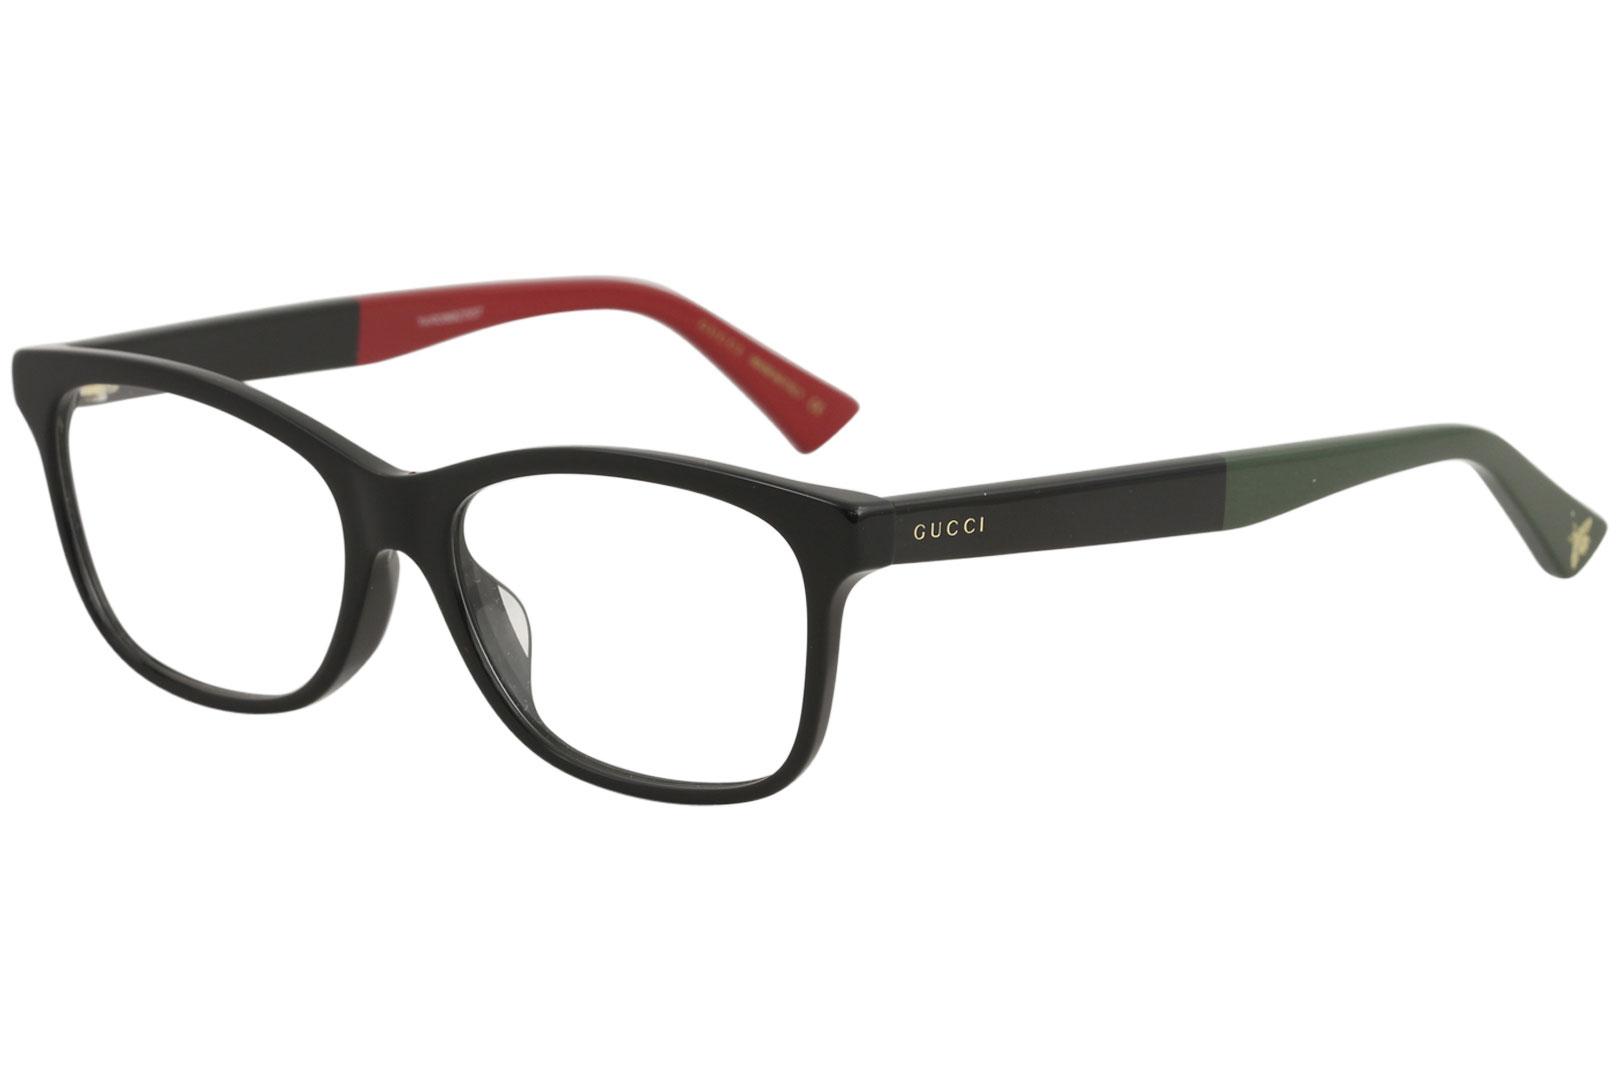 Gucci Men's Eyeglasses GG0162OA GG/0162/OA Full Rim Optical Frame - Black/Green/Red   003 - Lens 55 Bridge 17 Temple 150mm (Asian Fit)